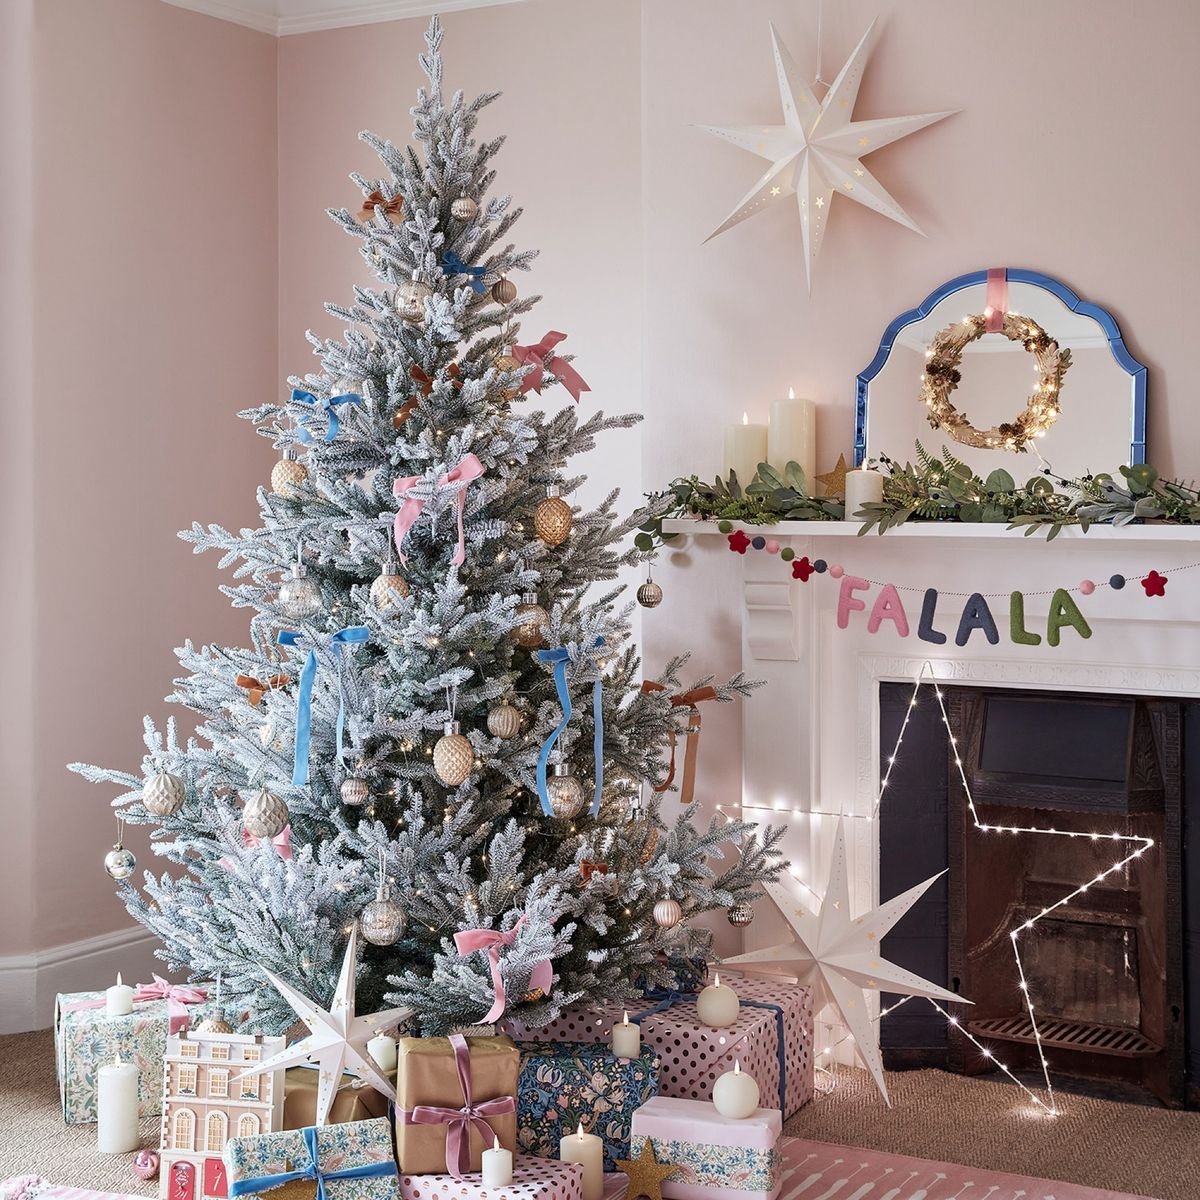 Gorgeous Christmas tree ideas